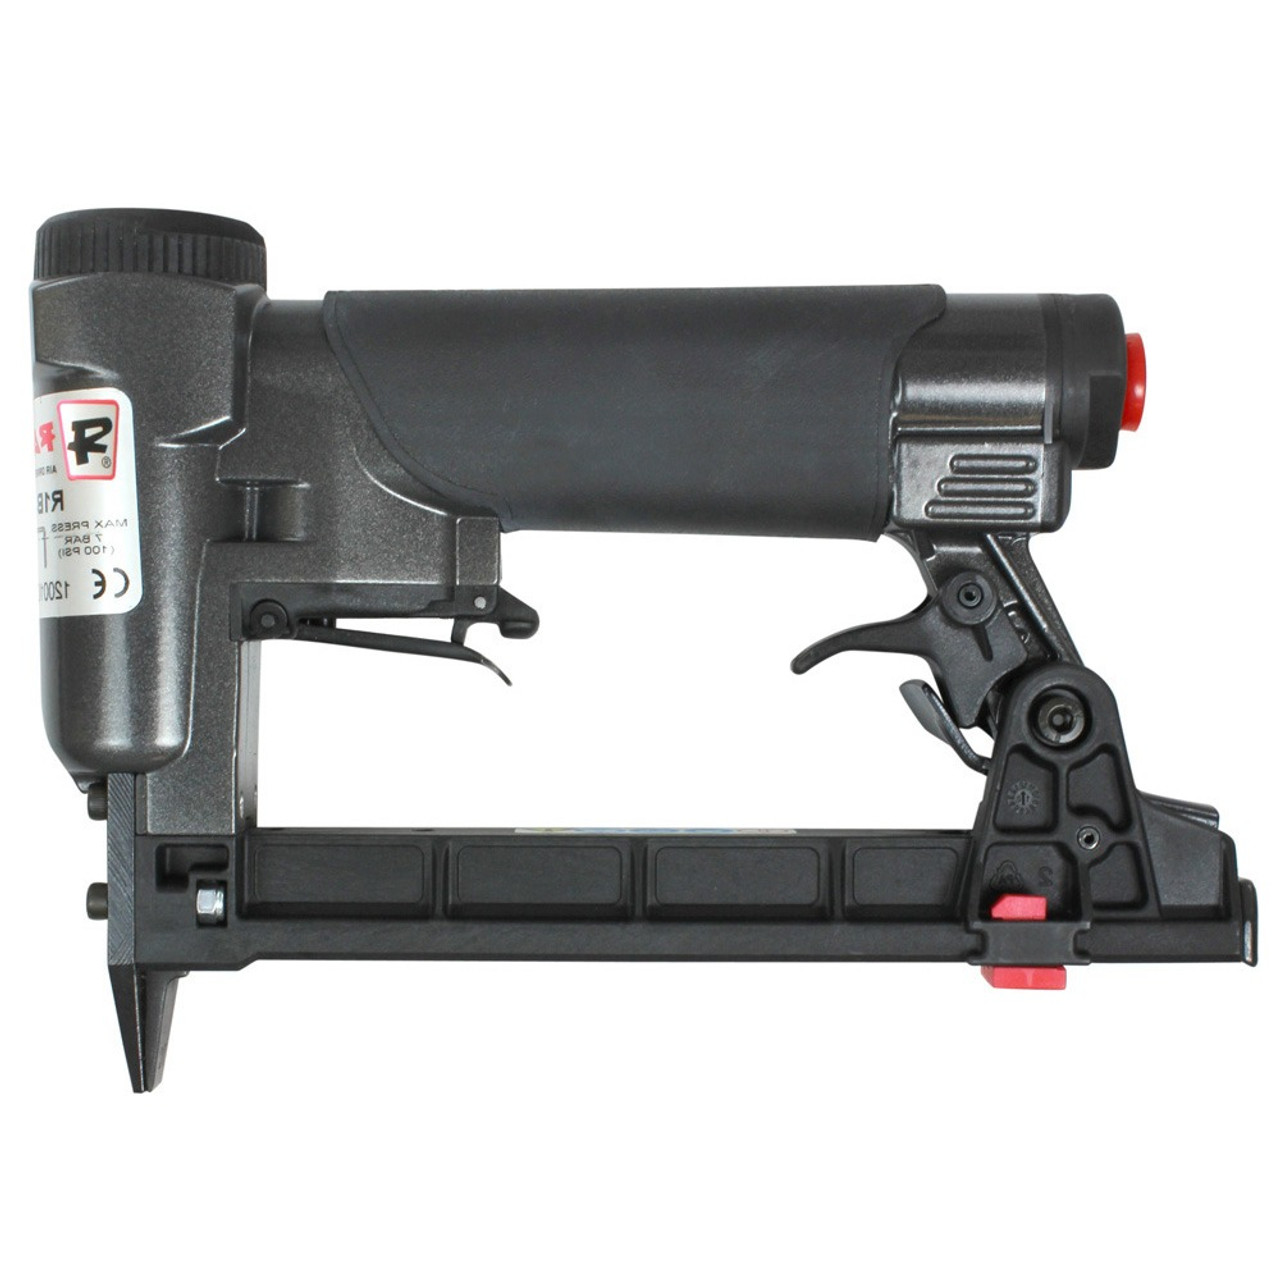 BeA 71/16-421 Upholstery Staple Gun Stapler with 2 boxes of Staples